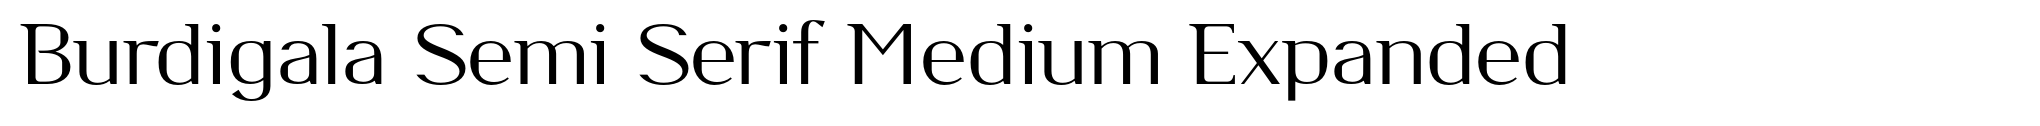 Burdigala Semi Serif Medium Expanded image